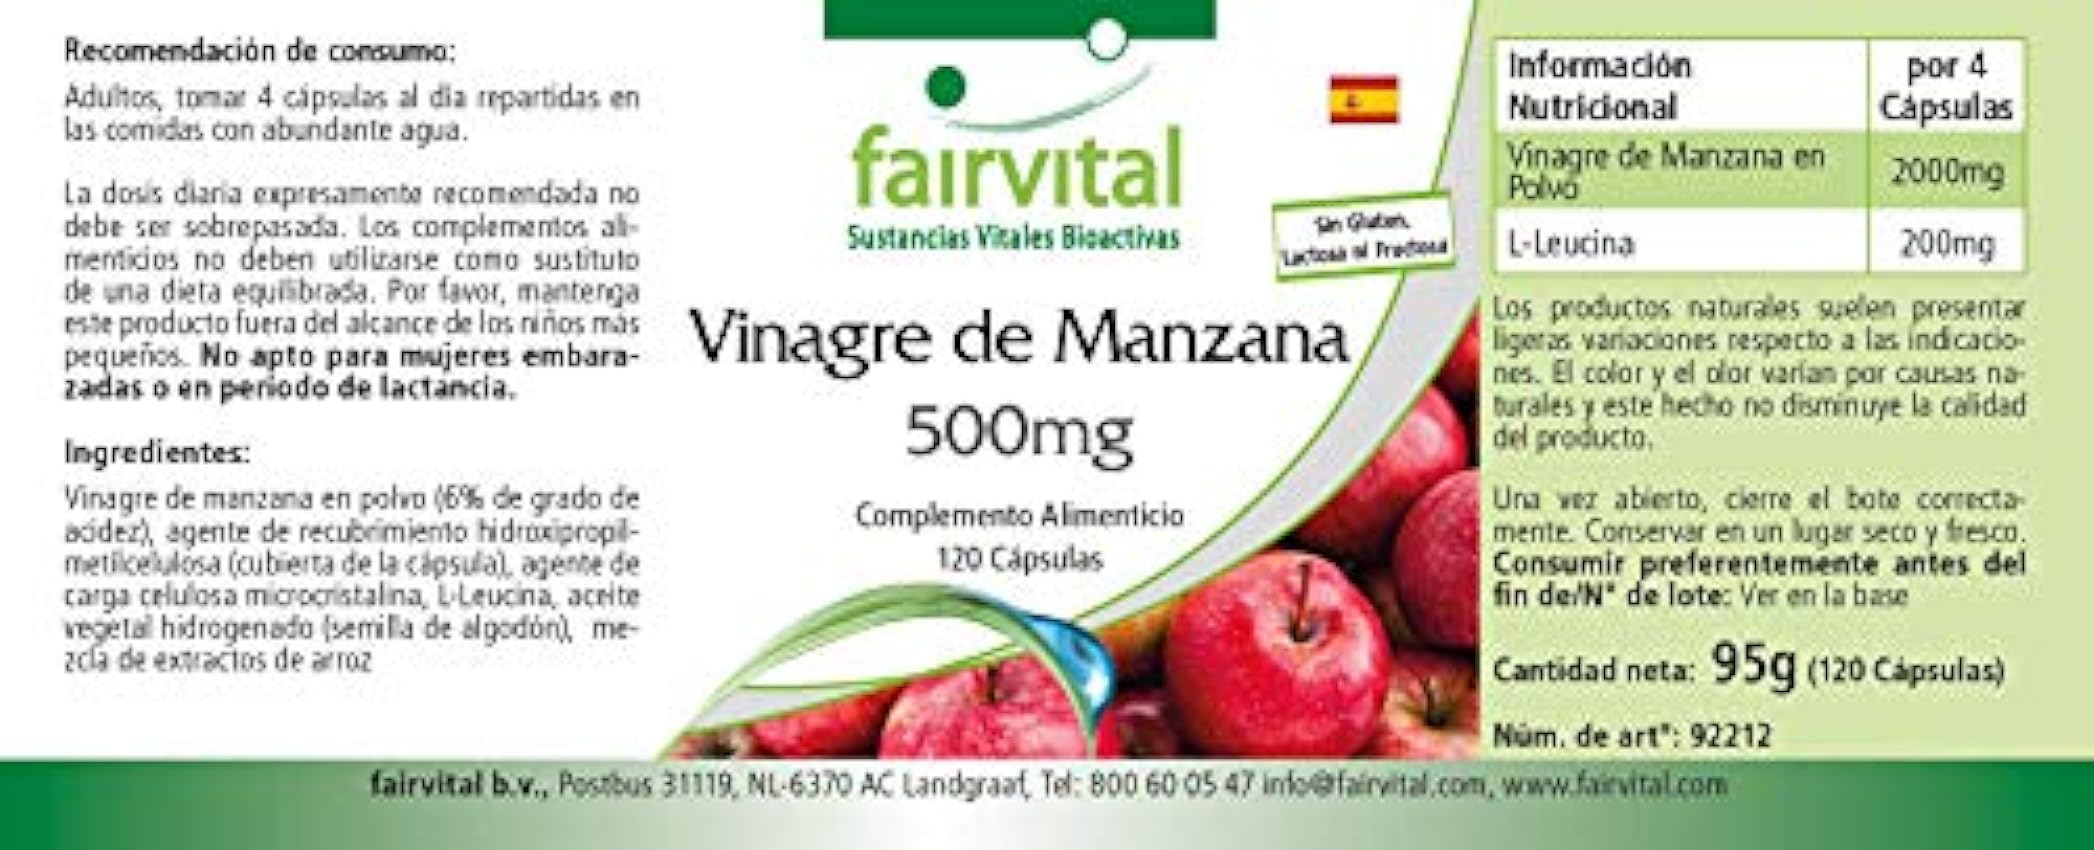 Fairvital | Vinagre de Manzana 500mg - Dosis elevada - VEGANO - 120 Cápsulas - Calidad Alemana Mx6WXToX